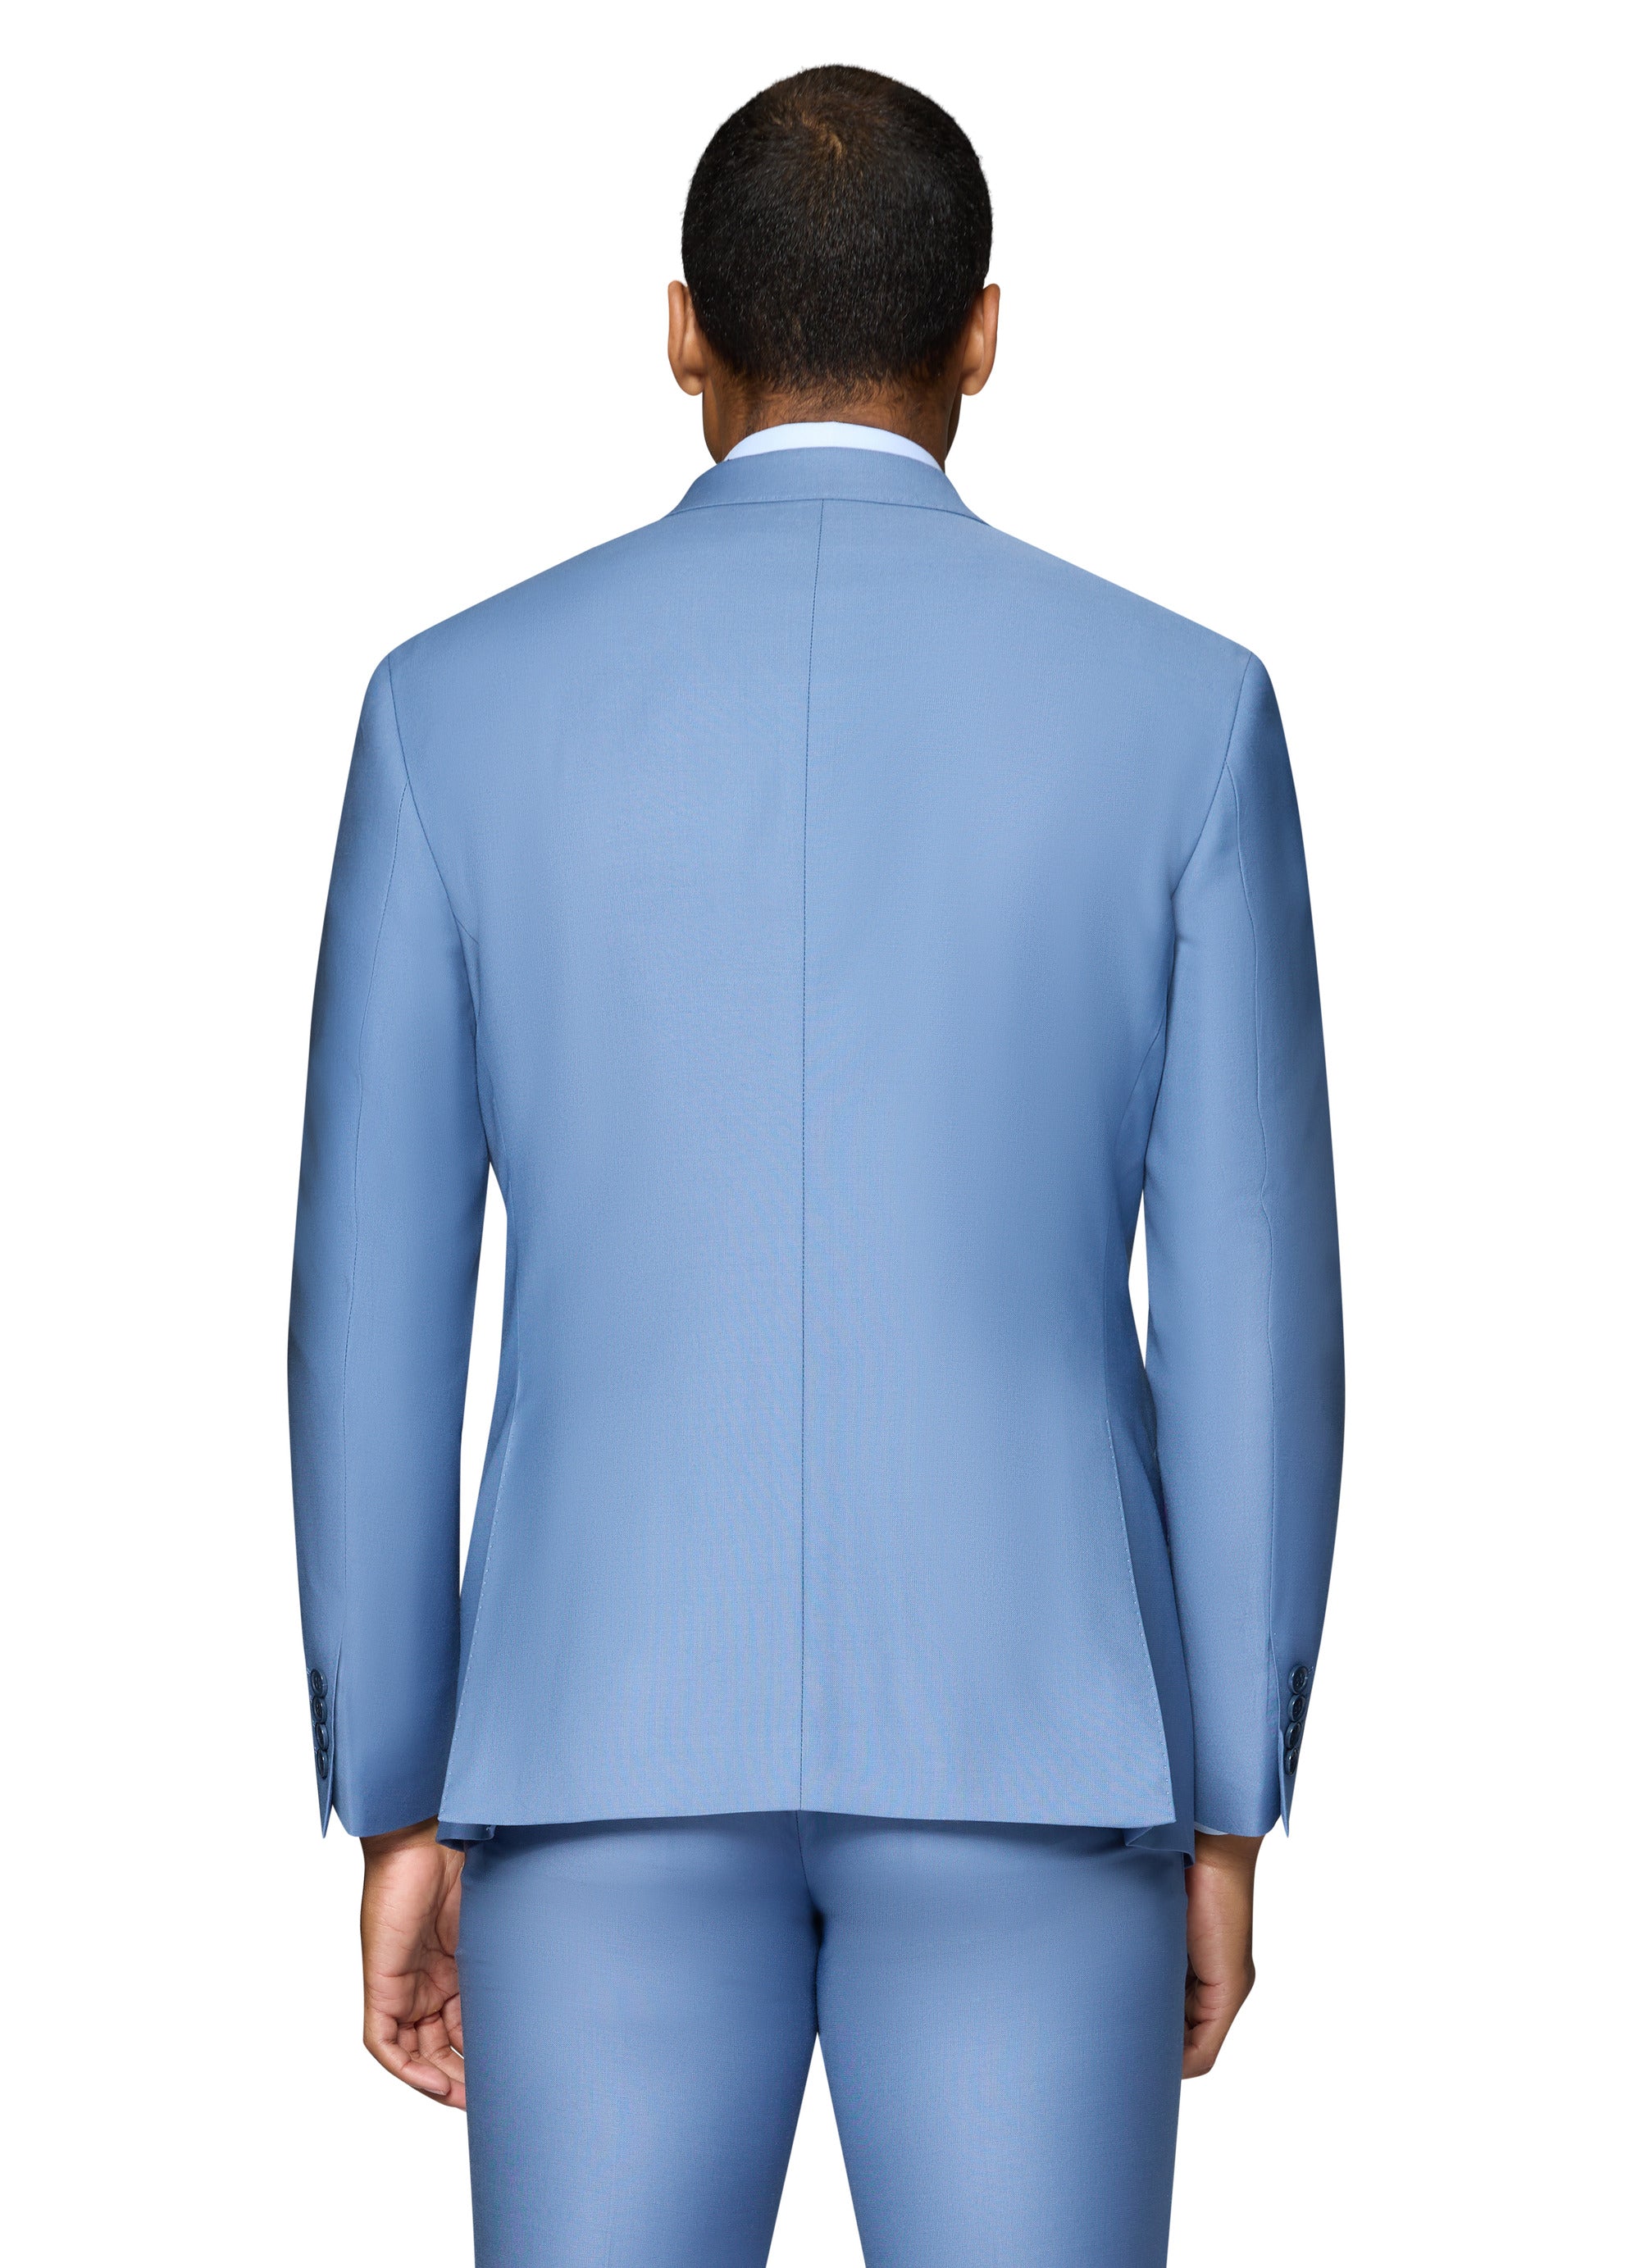 Berragamo Elegant - Faille Wool Solid Suit Slim - Light Blue